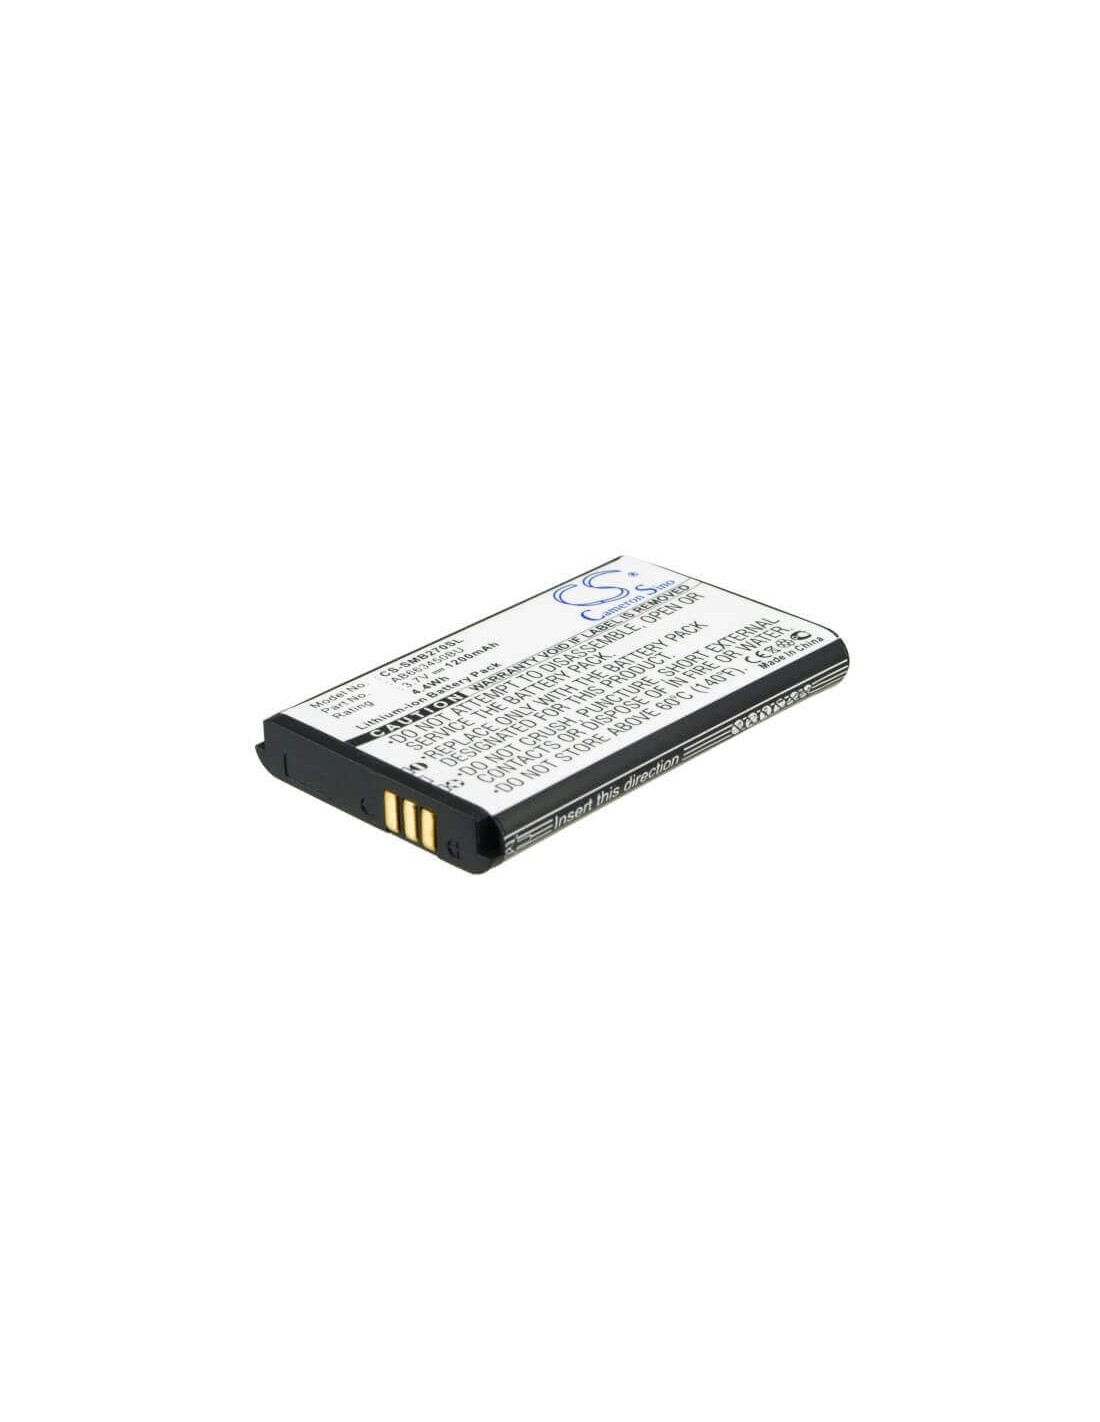 Battery for Samsung GT-B2700, B2700 3.7V, 1200mAh - 4.44Wh